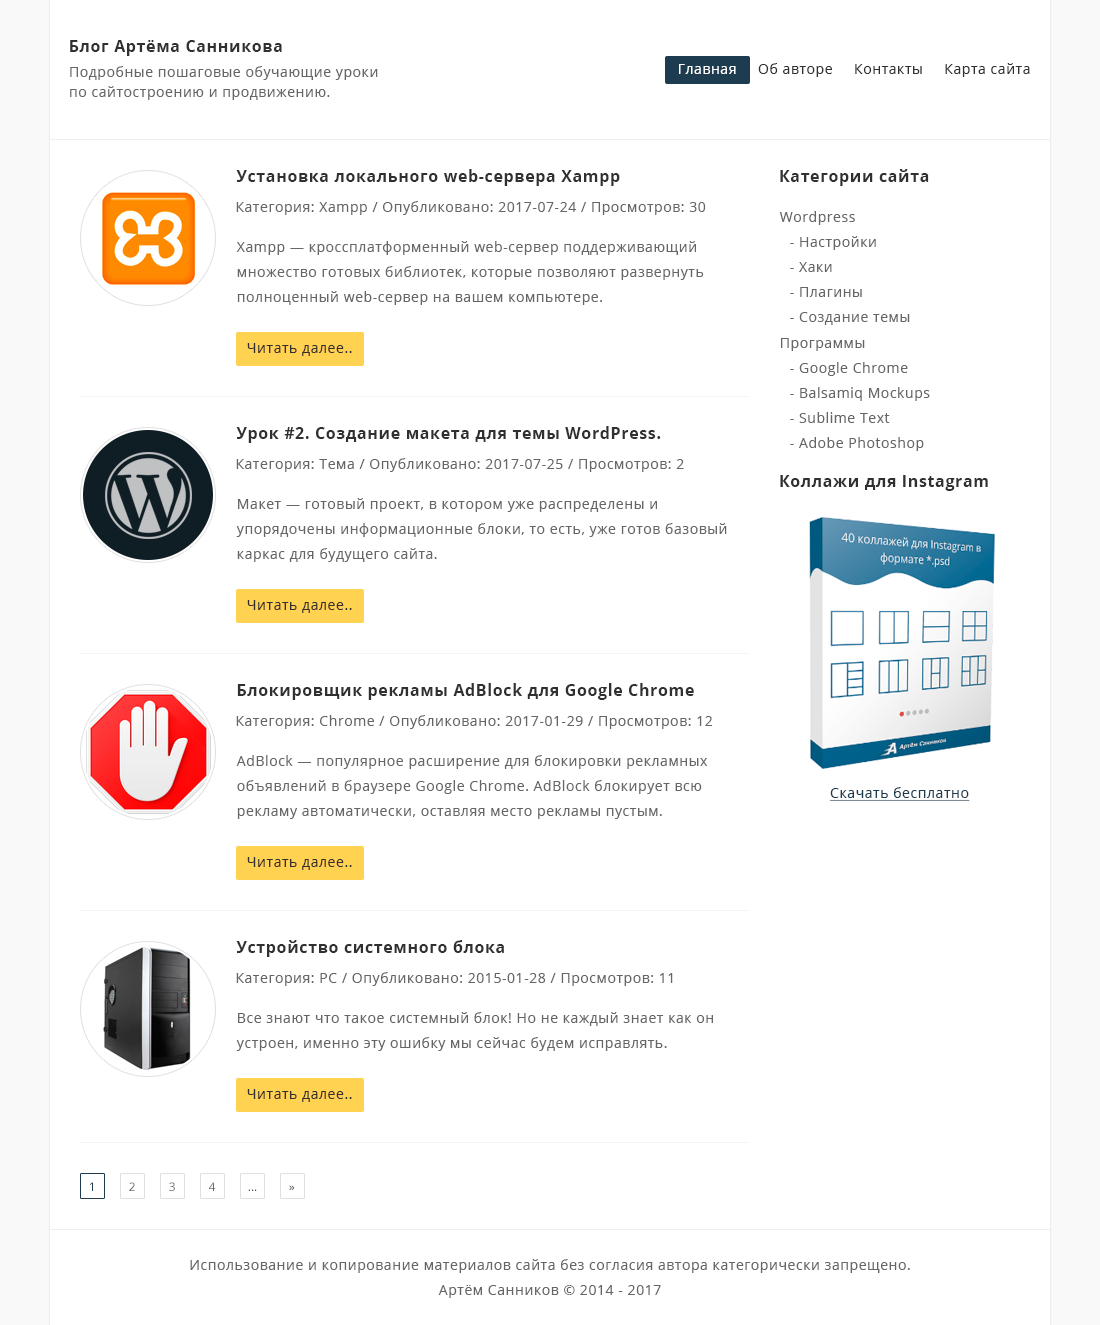 Дизайн главной страницы для темы WordPress в Adobe Photoshop